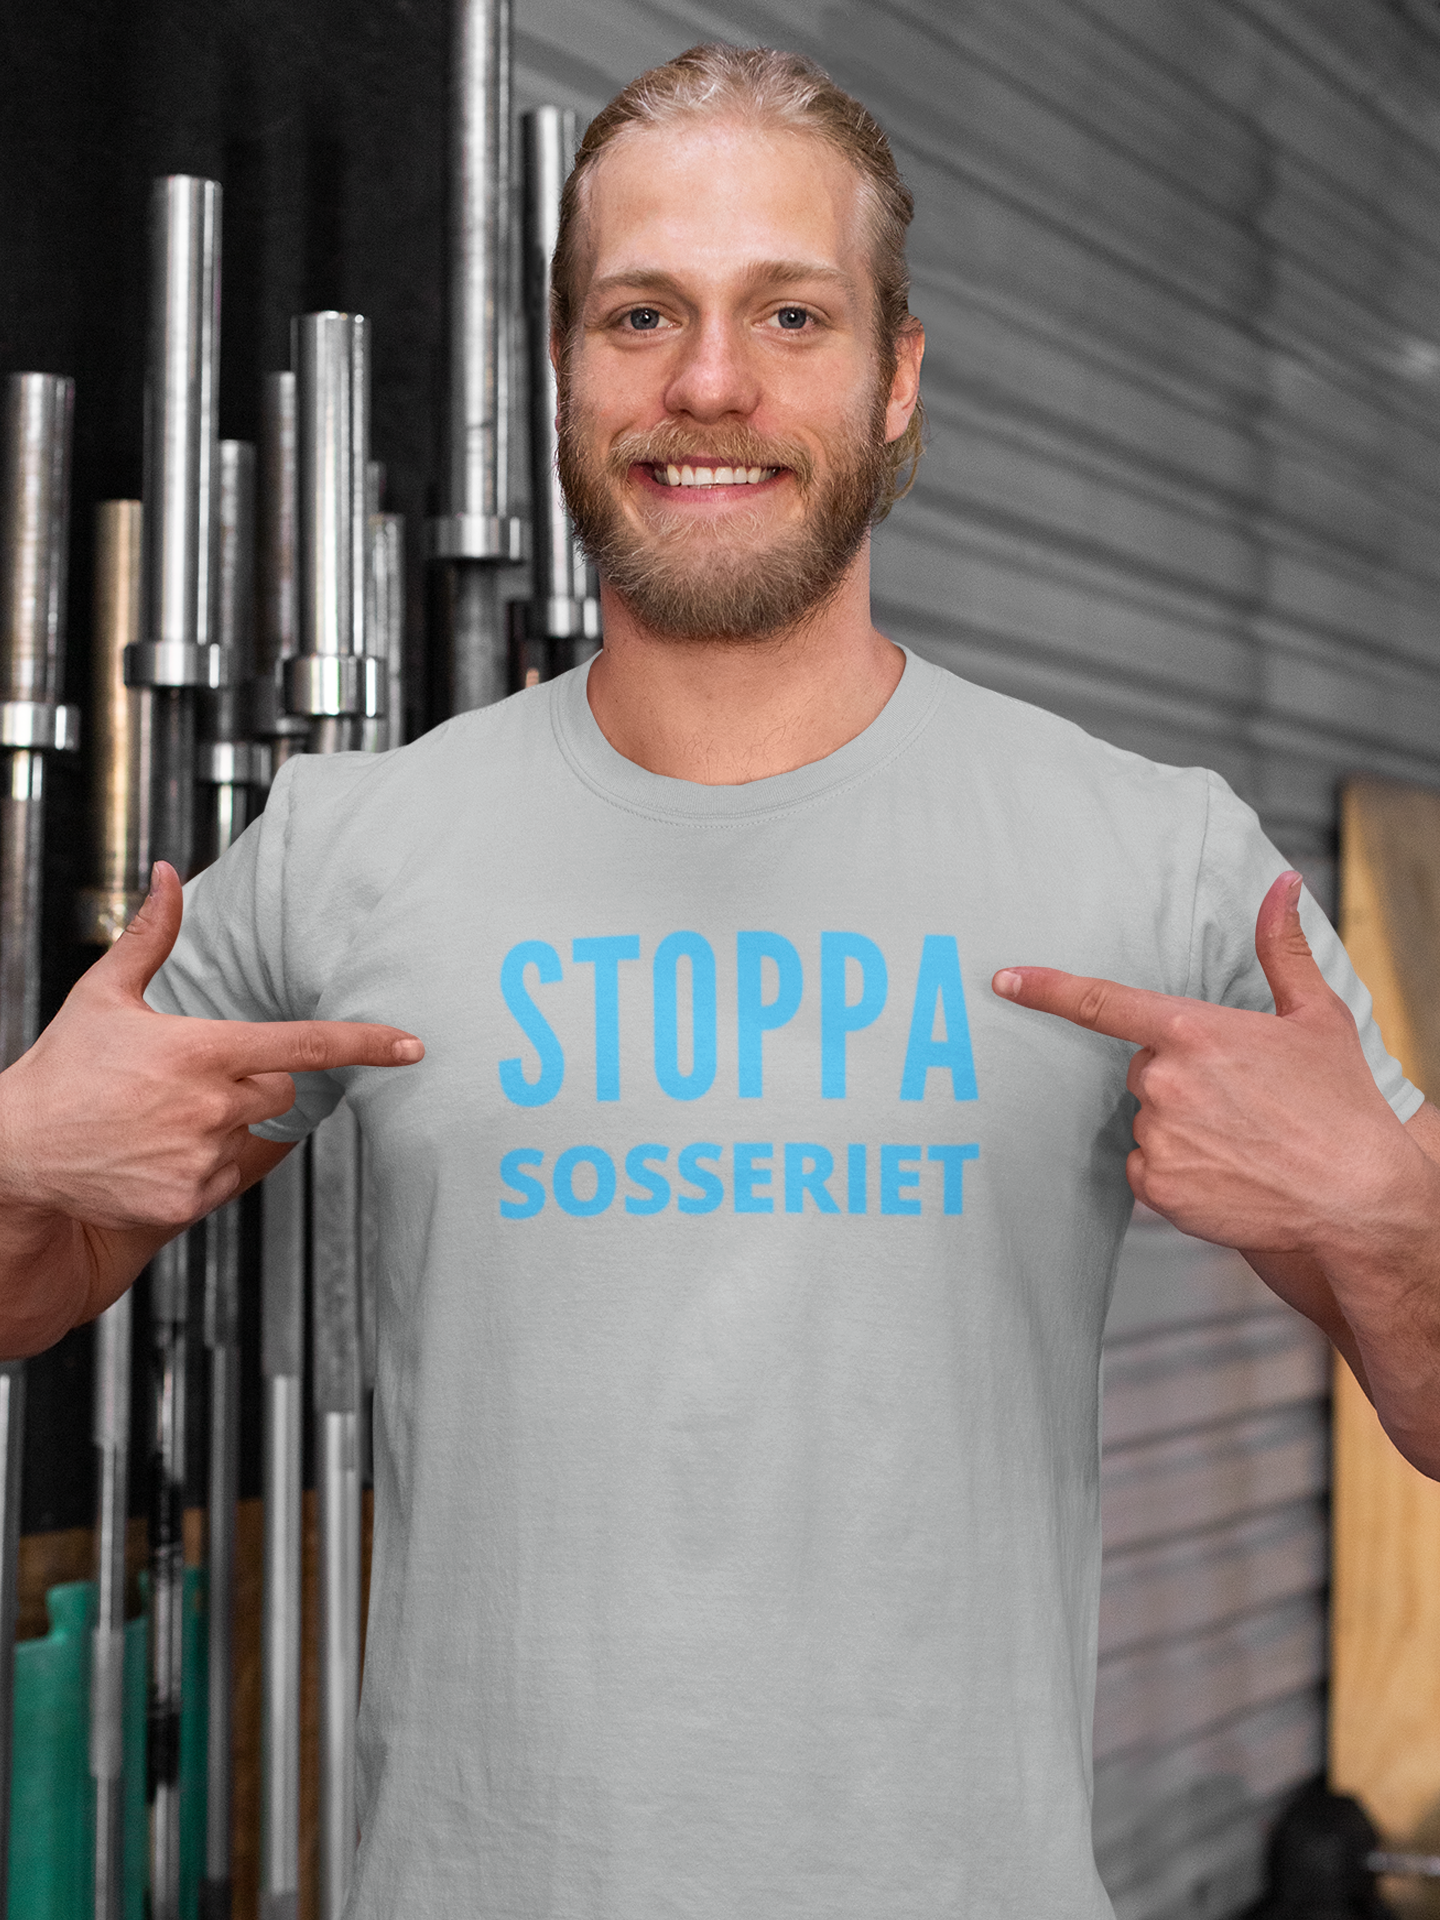 Politik tröjor, SD Butik, Sverigedemokraterna, Stoppa Sosseriet T-Shirt, Tshirt Herr Stoppa Sosseriet, Anti Socialdemokrat Tröja